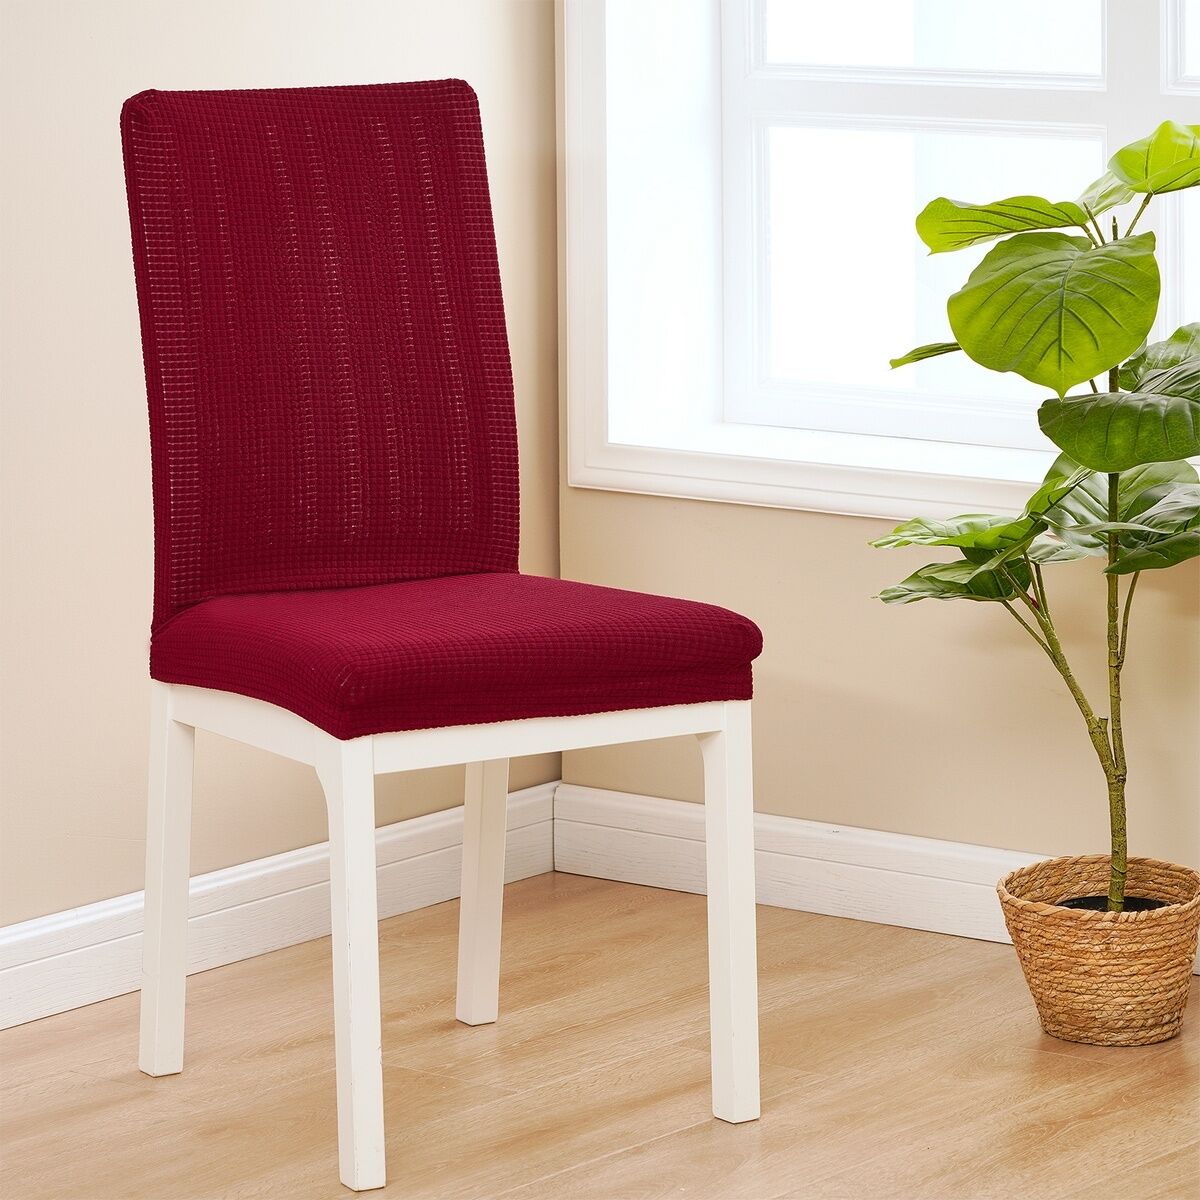 4Home Elastyczny pokrowiec na krzesło Magic clean czerwony, 45 - 50 cm, zestaw 2 szt.